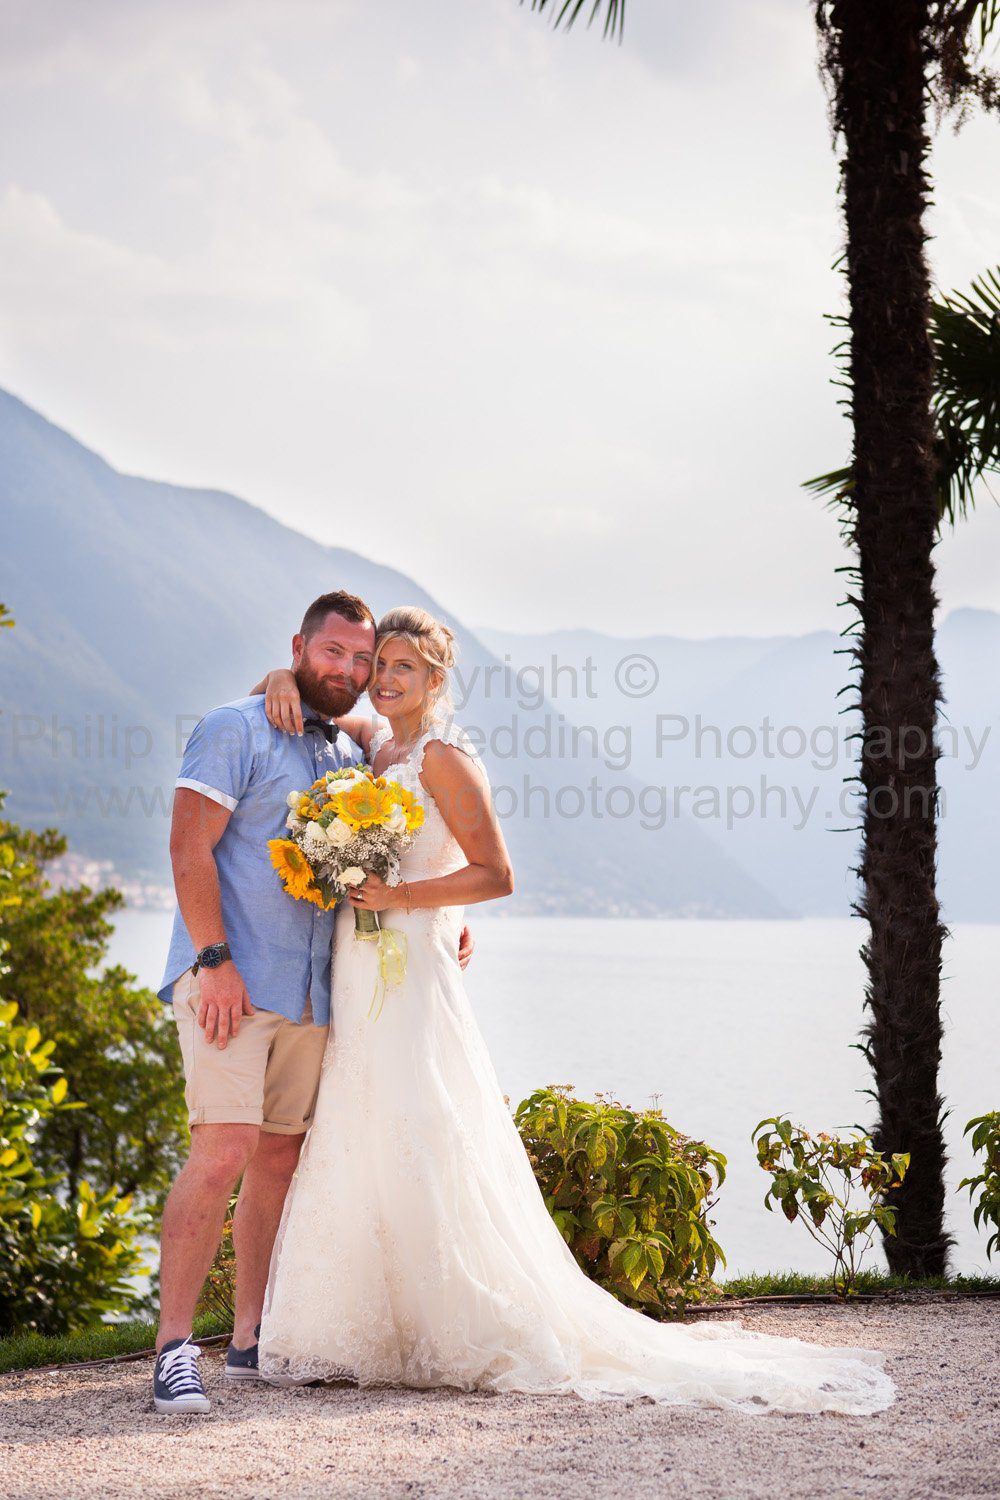 0001 Preview Ricky Maia Wedding Villa Balbianello Lake Como Italy